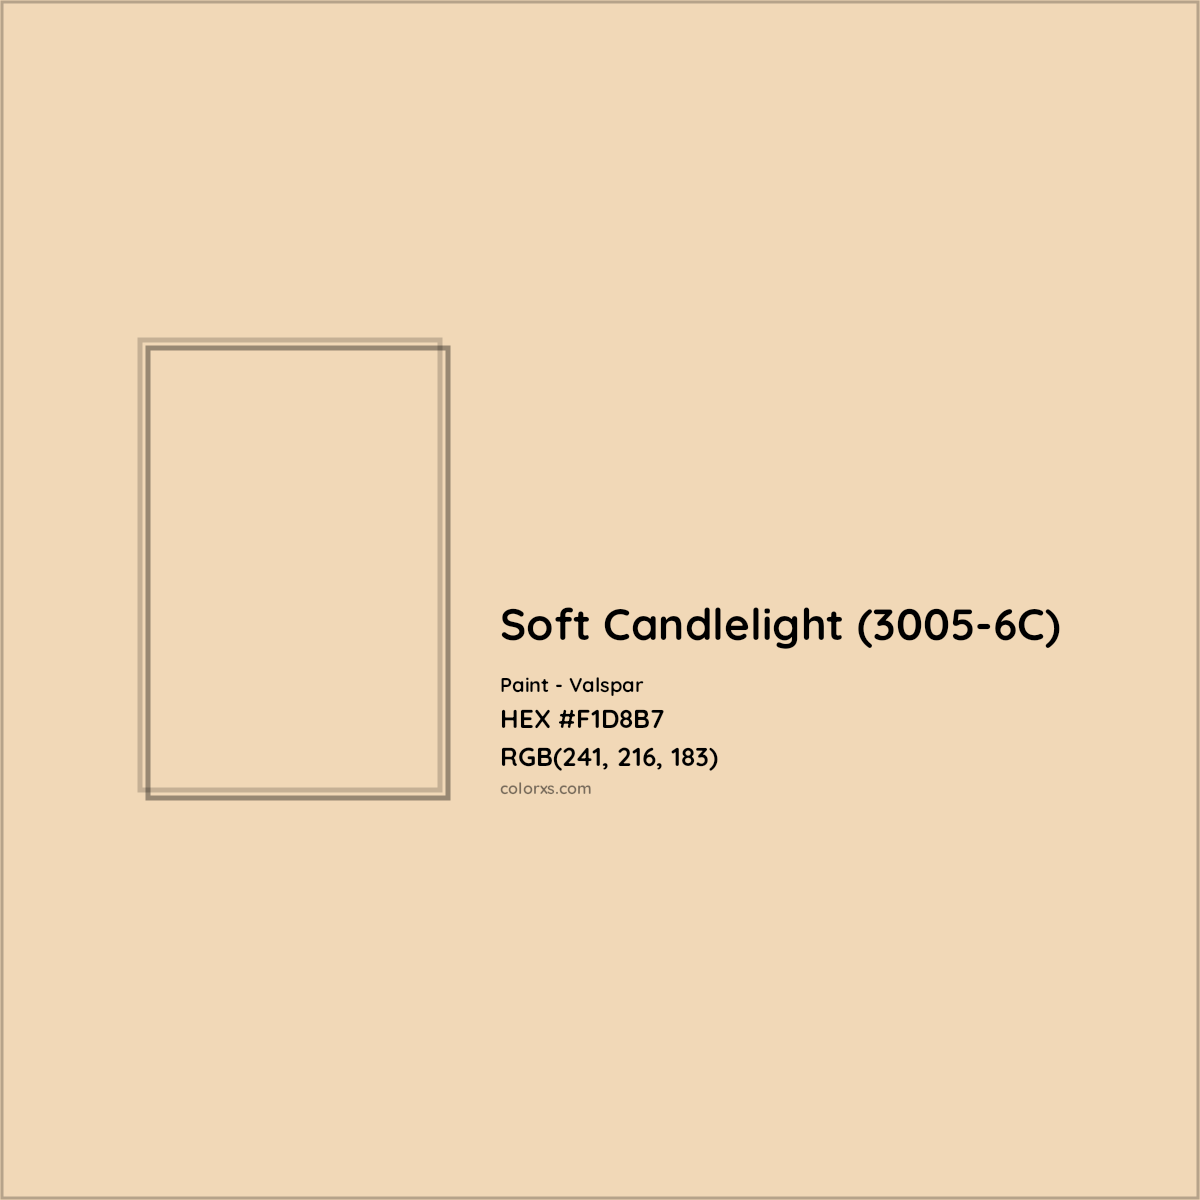 HEX #F1D8B7 Soft Candlelight (3005-6C) Paint Valspar - Color Code